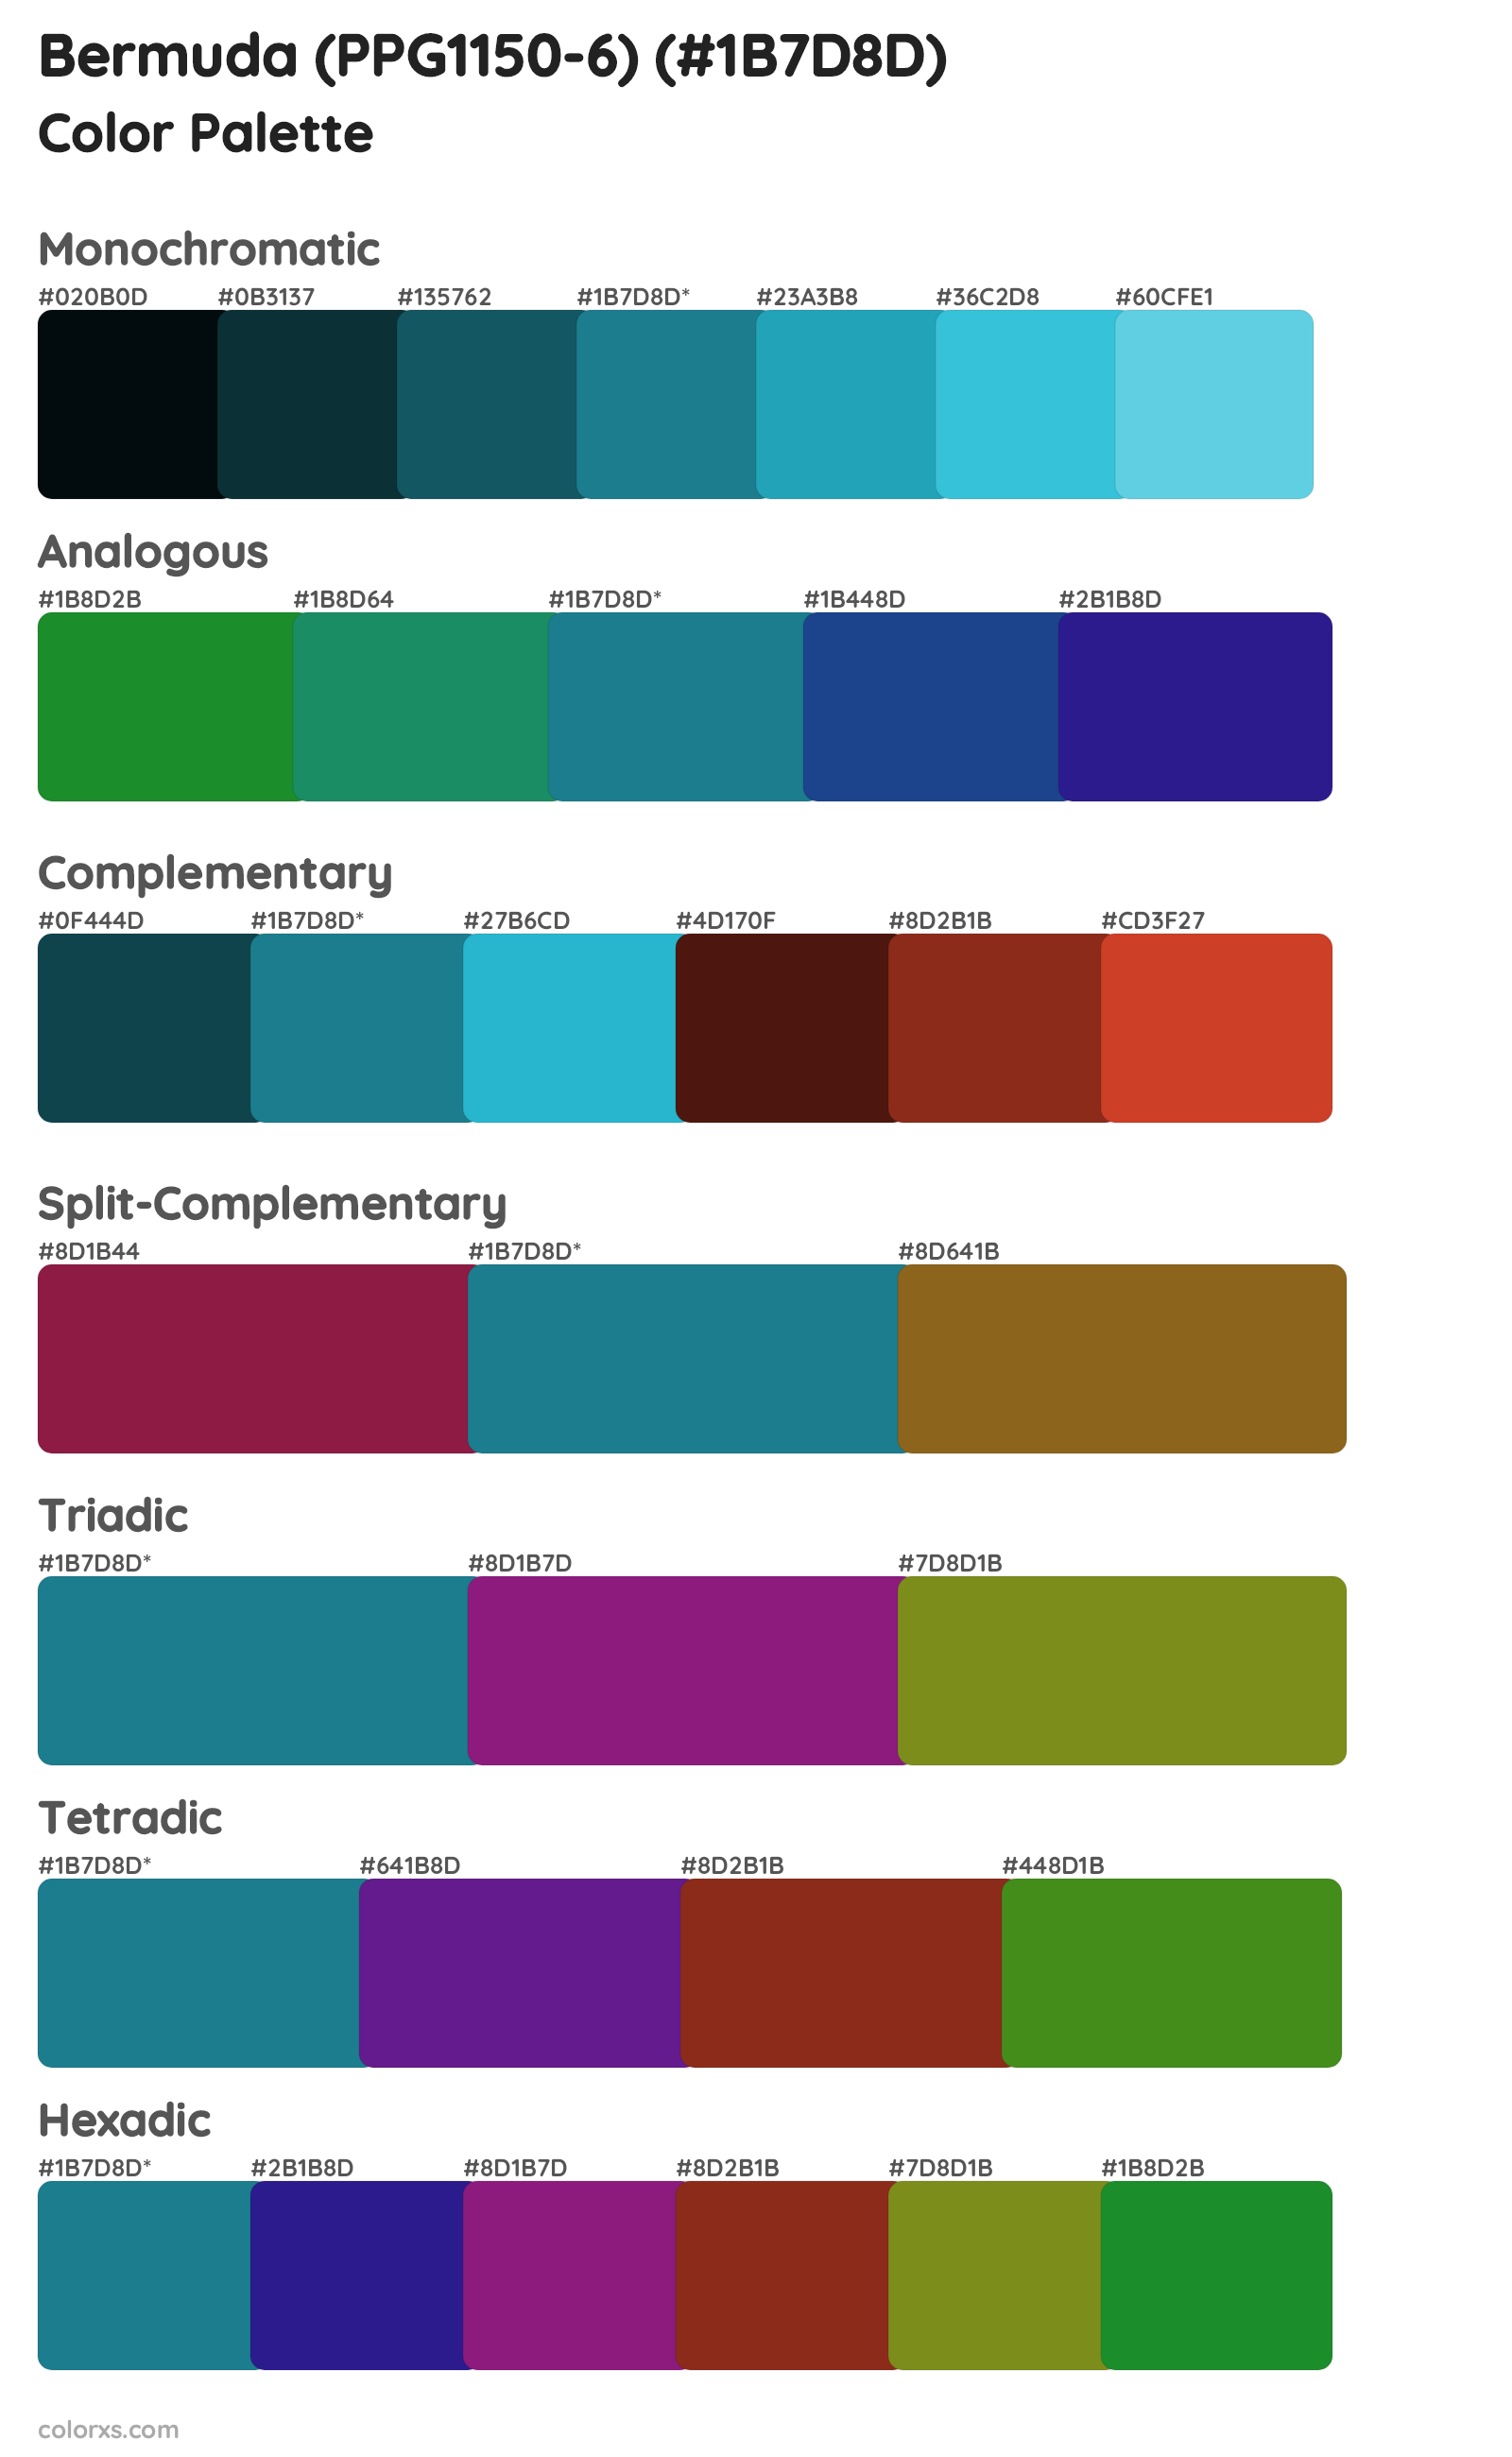 Bermuda (PPG1150-6) Color Scheme Palettes